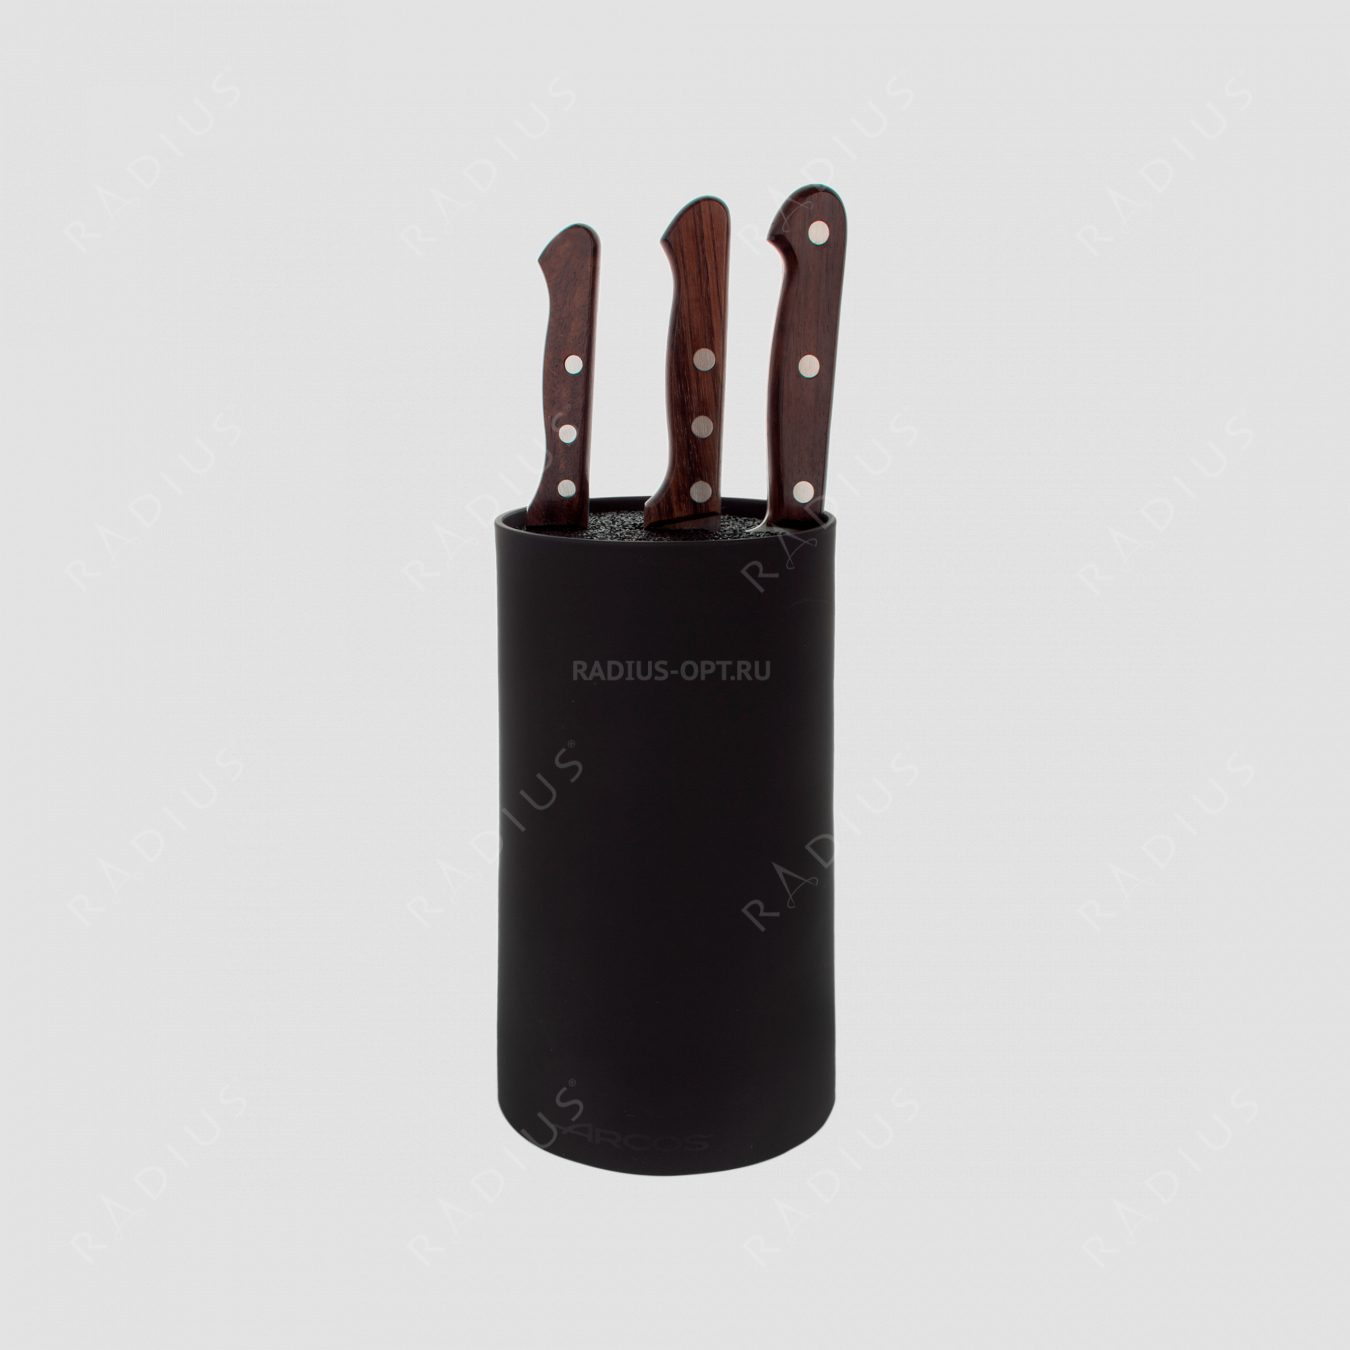 Набор из 3-х ножей с черной подставкой, серия Atlantico, ARCOS, Испания